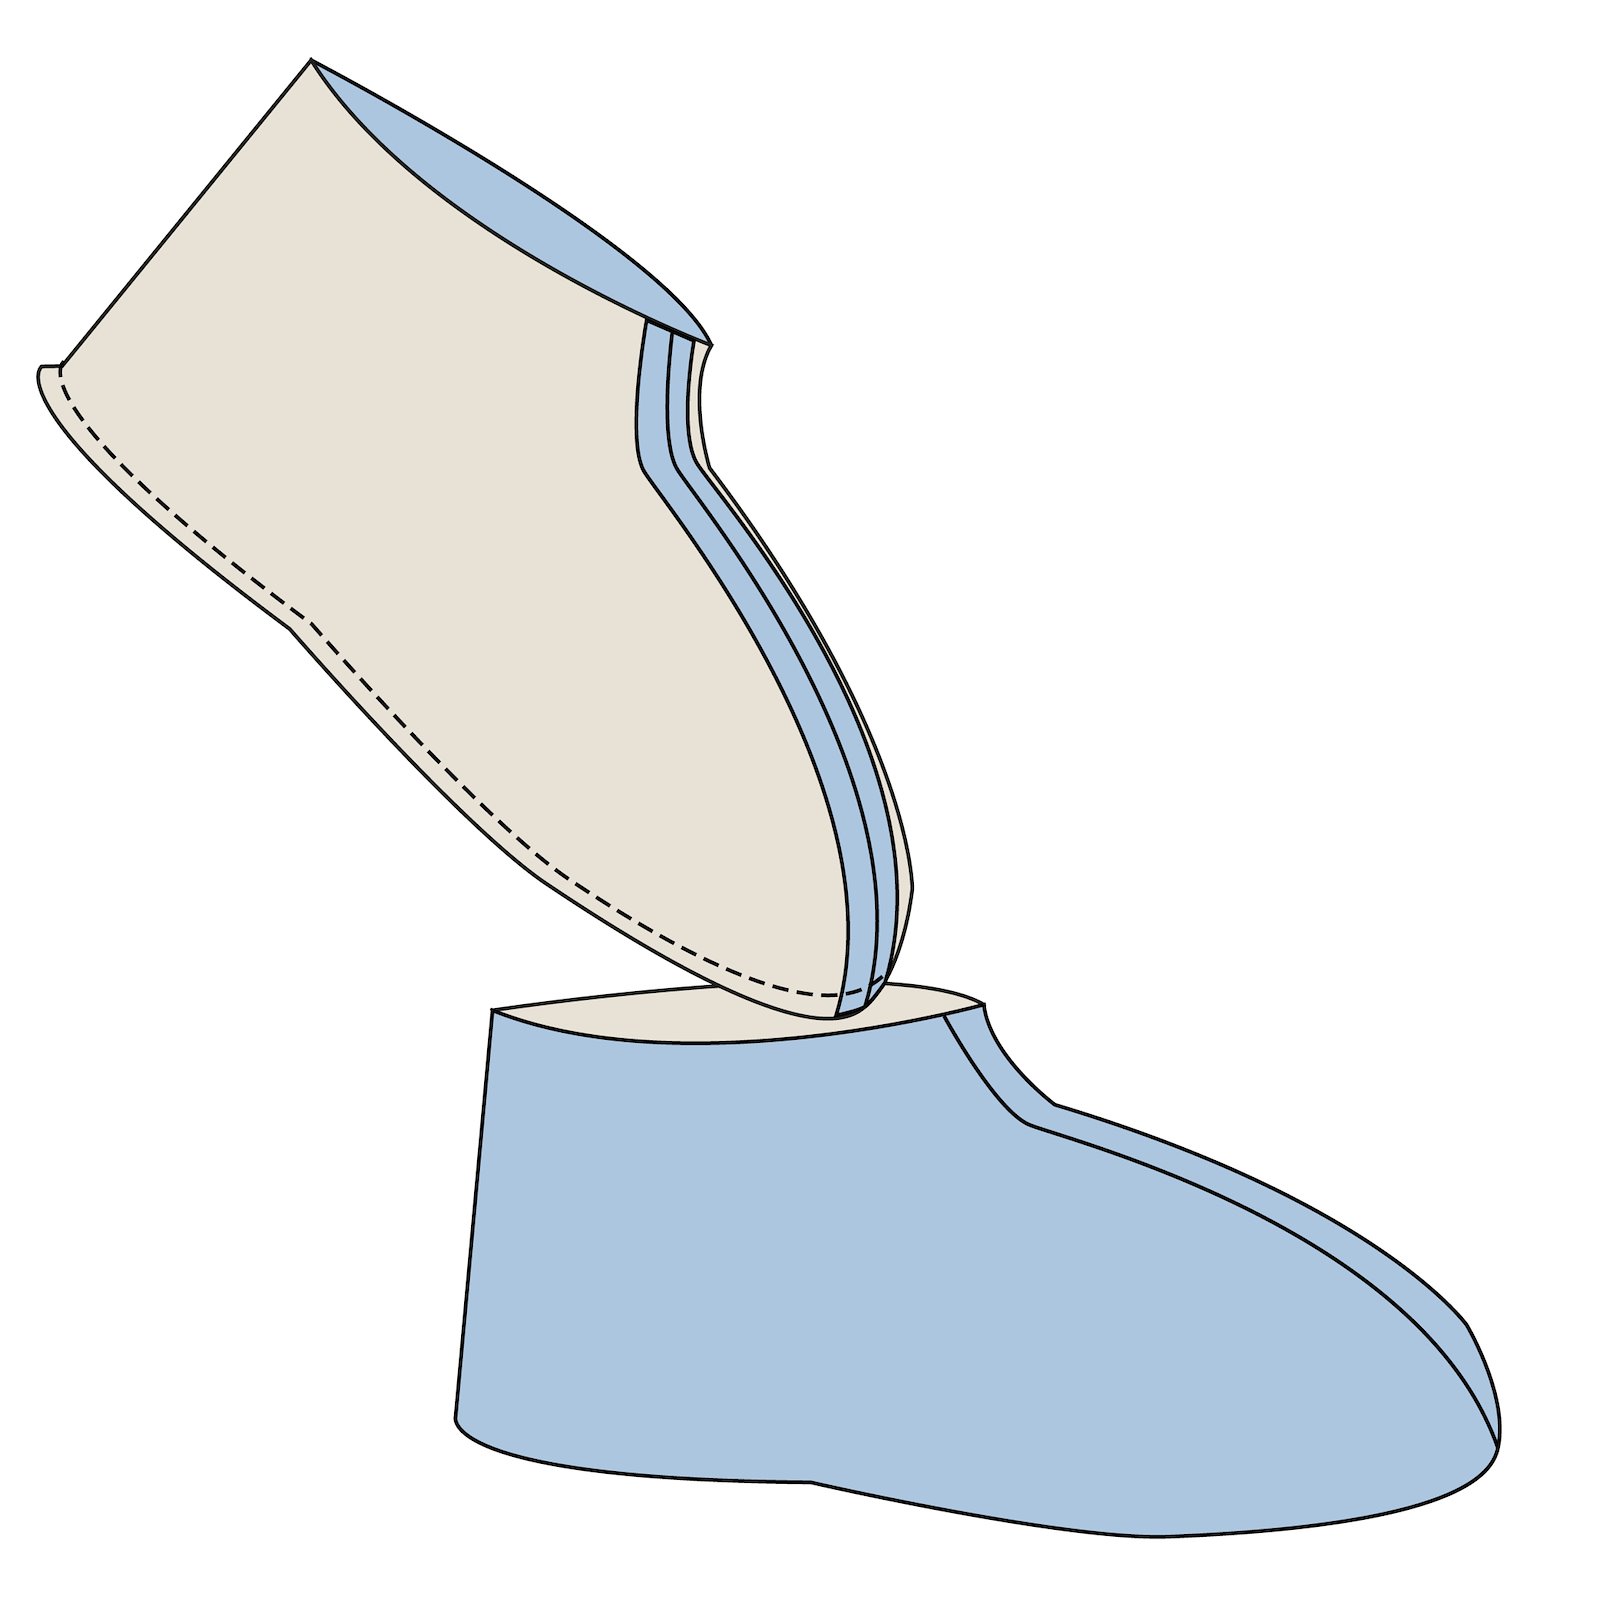 Sewing pattern: Adult Slippers DIY2315_step5.jpg